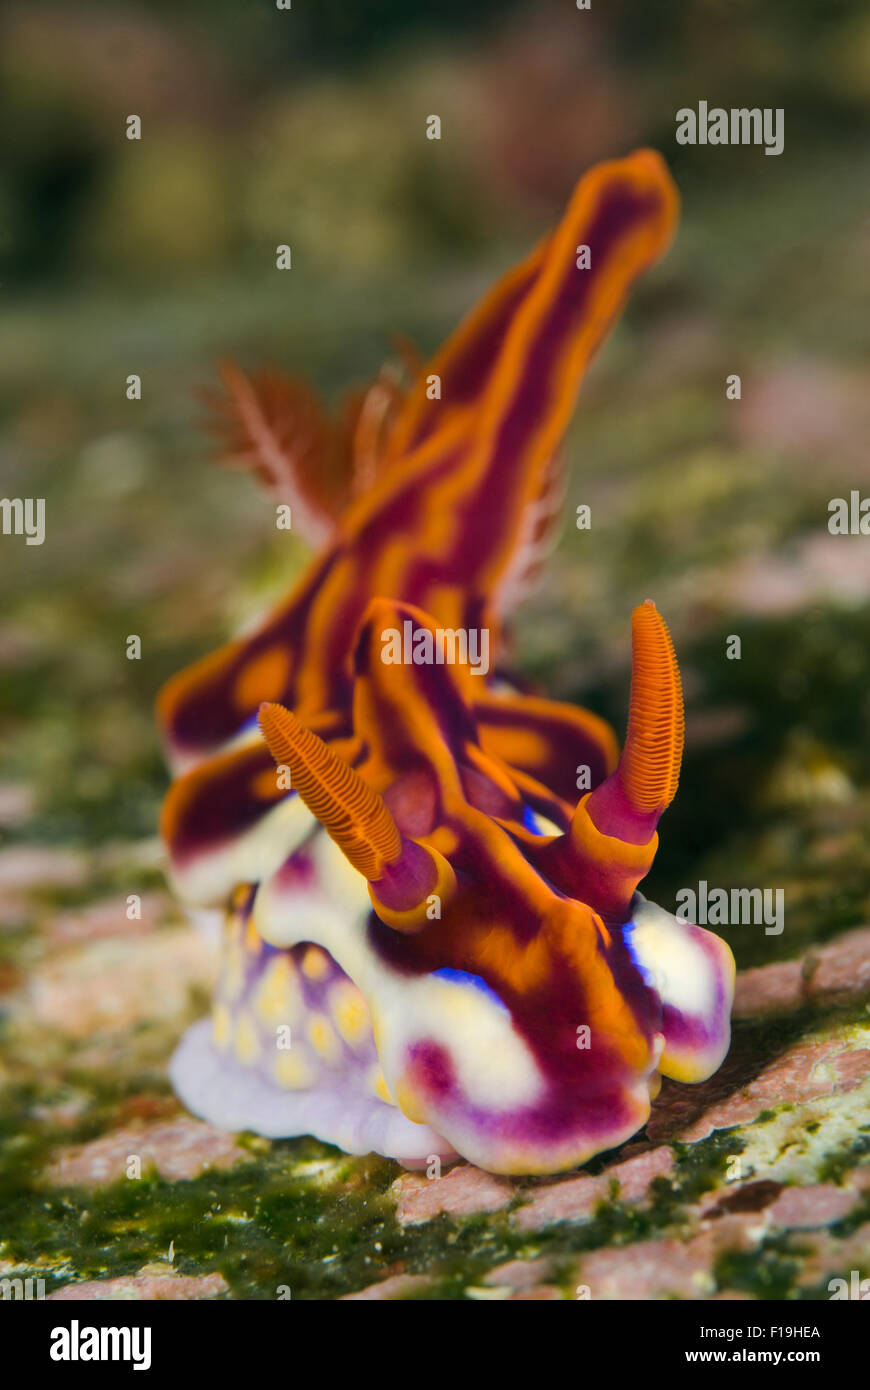 px520405-D. Magnificent Nudibranch (Ceratosoma flavicostatum) sea slug, also called Miamira flavicostata and Ceratosoma magnific Stock Photo